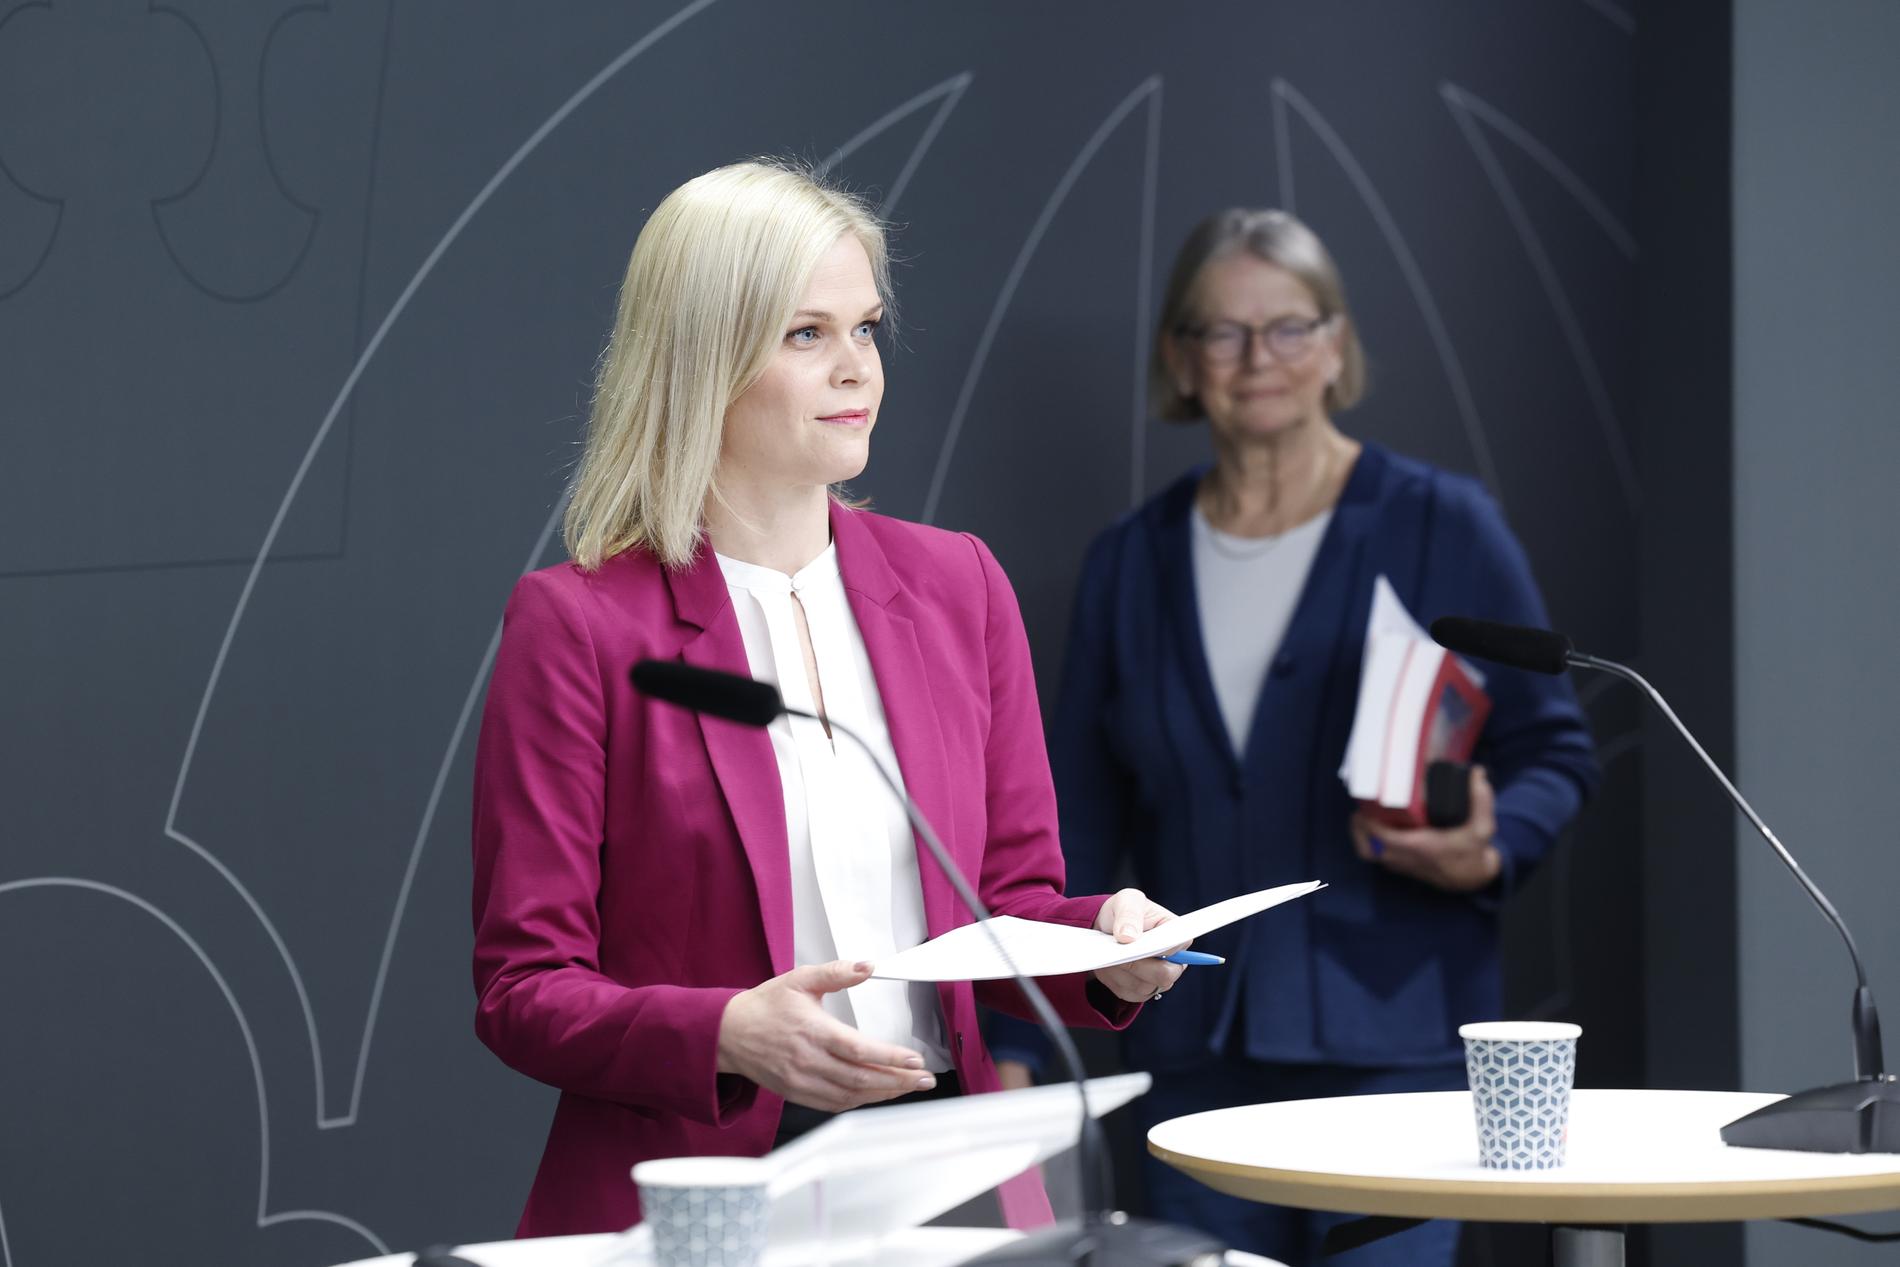 Jämställdhets- och biträdande arbetsmarknadsminister Paulina Brandberg (L) och den särskilda utredaren Anna Skarhed under en pressträff på onsdagen.